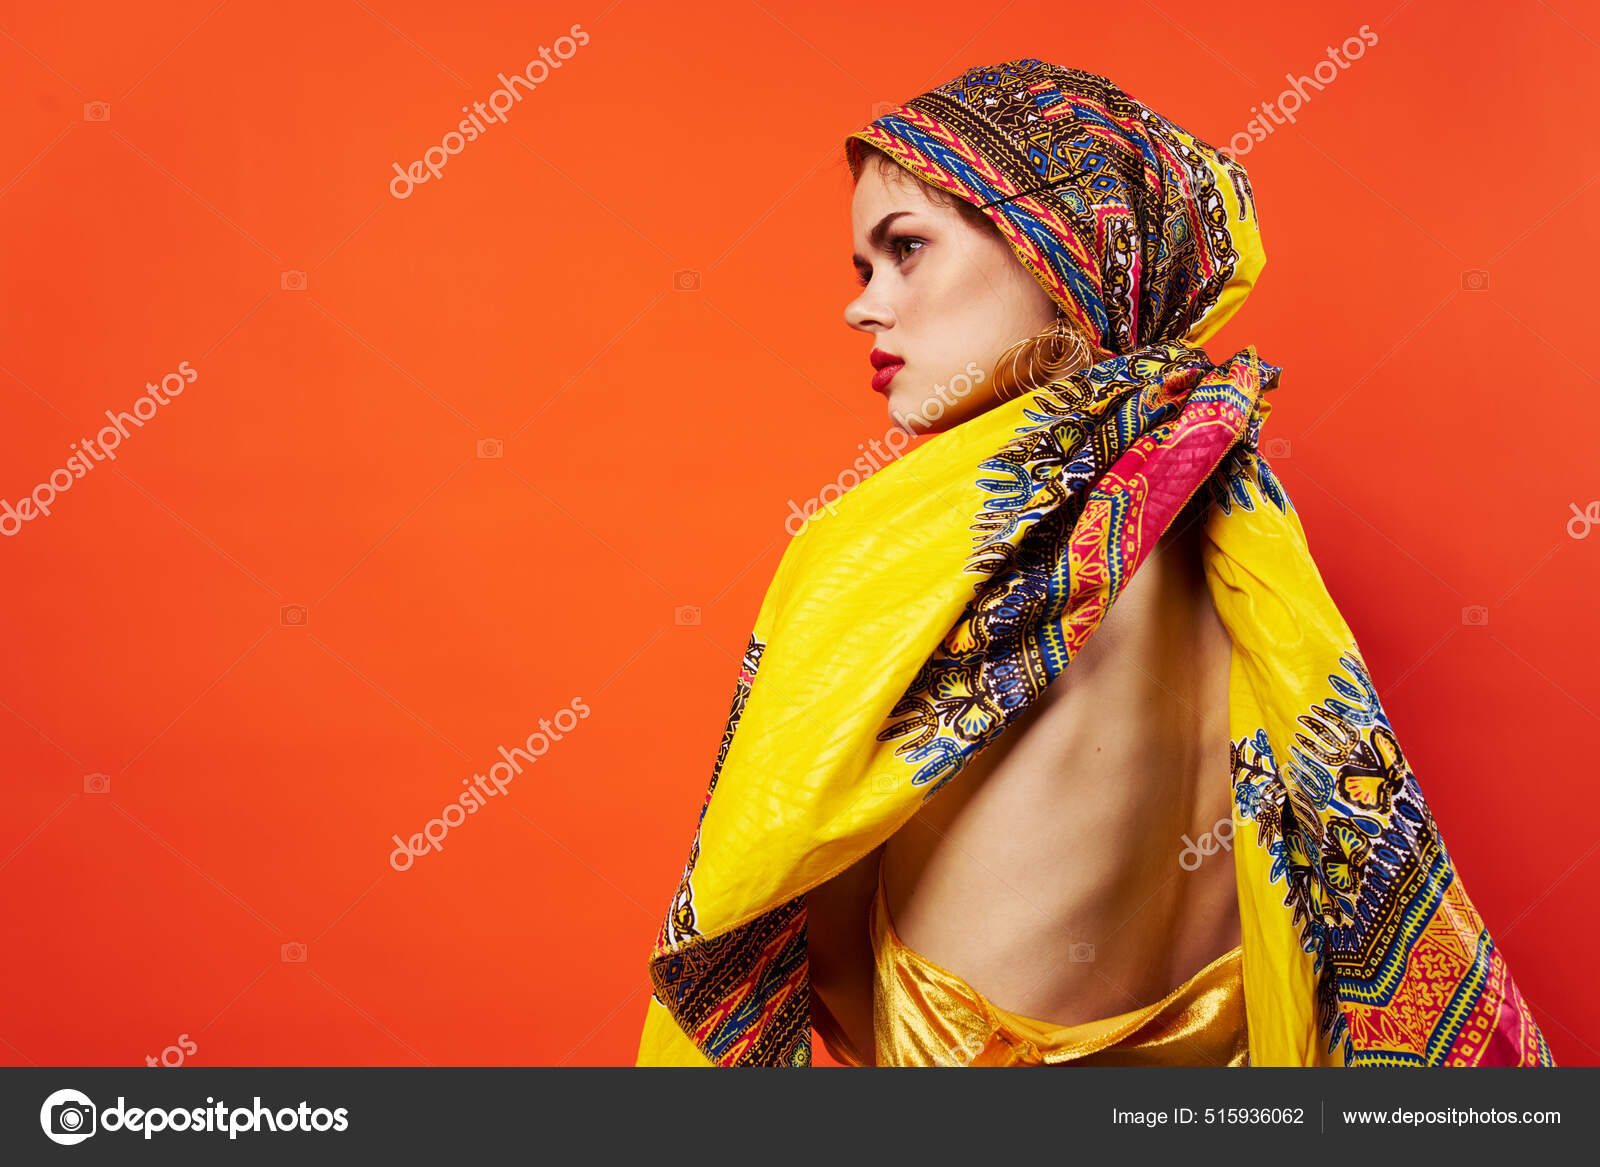 Aankondiging onder versneller Vrolijk vrouw etniciteit veelkleurig hoofddoek make-up glamor rood  achtergrond ⬇ Stockfoto, rechtenvrije foto door © ShotStudio #515936062